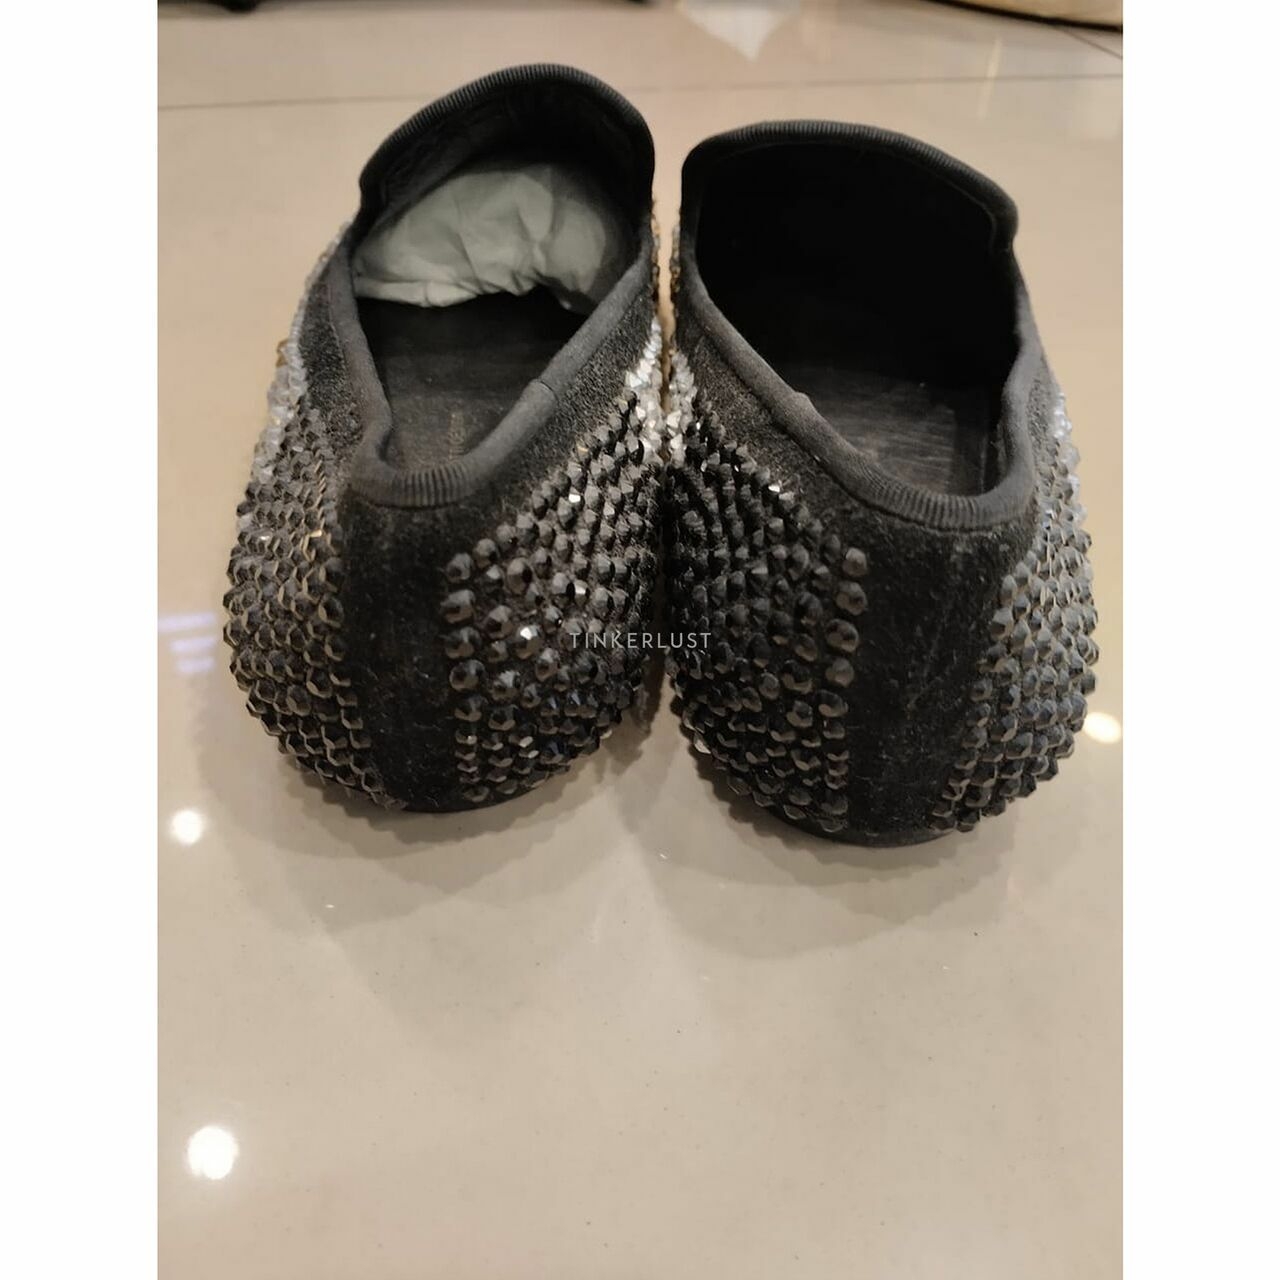 Giuseppe Zanotti Crystal Embellished Shoes